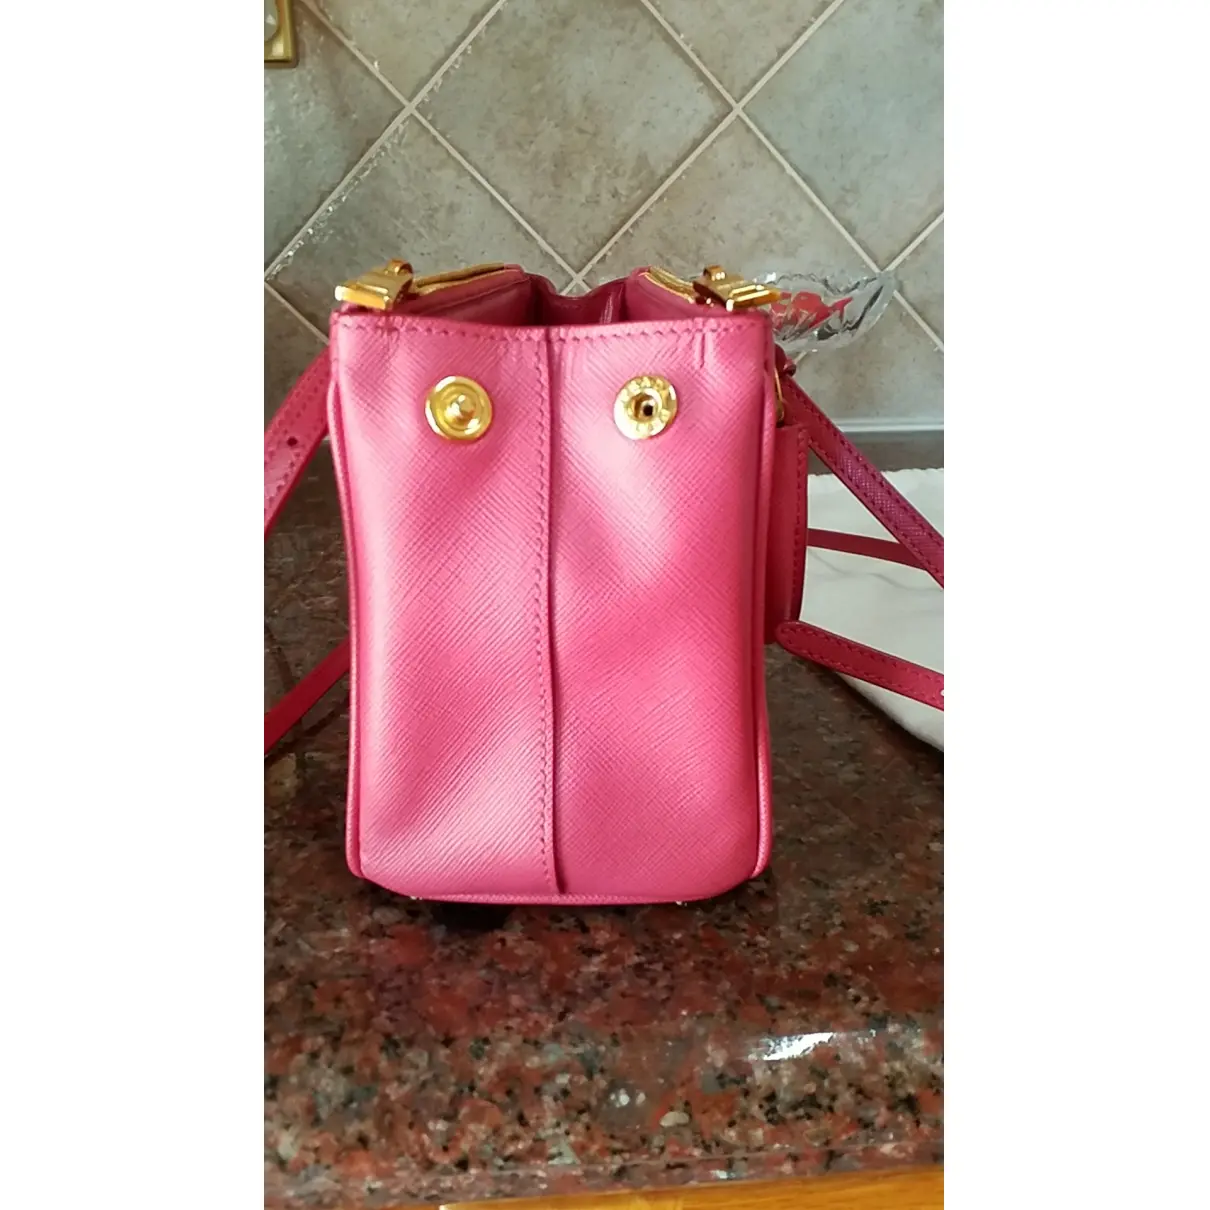 Buy Prada Galleria leather mini bag online